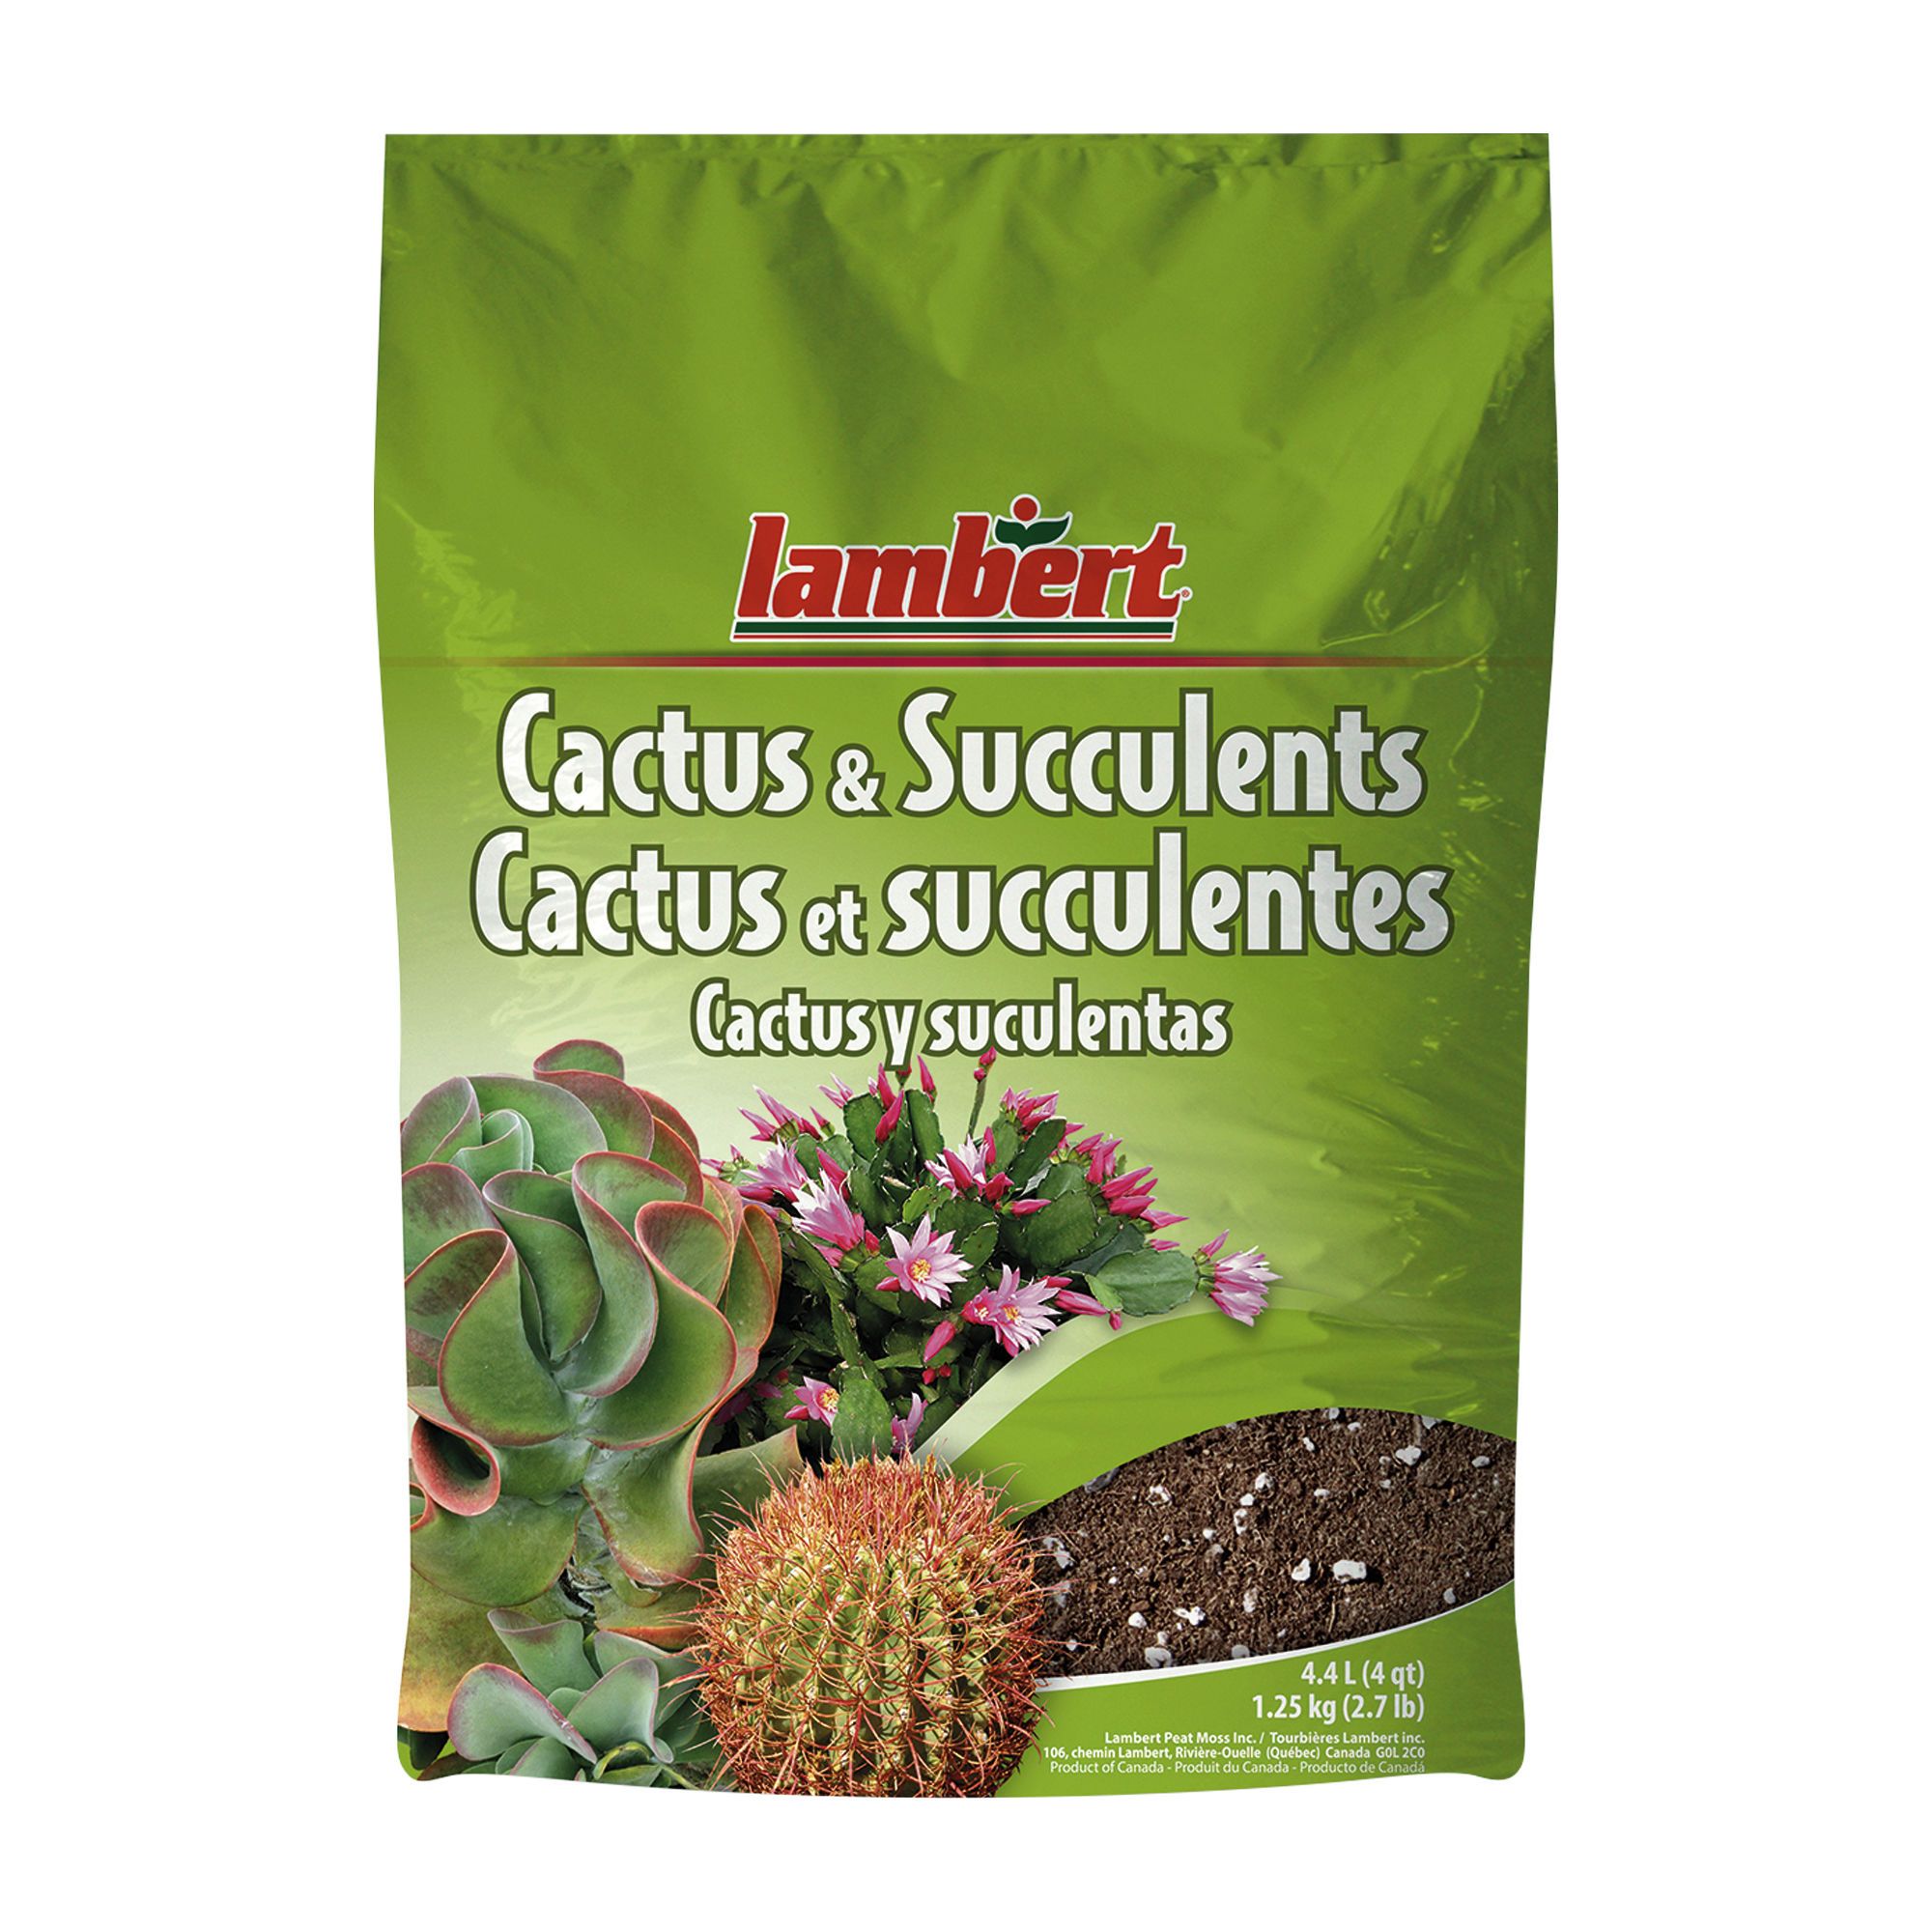 Kakteenerde - Terreau Cactus Ricoter - Terreaux, paillis, tuteurs